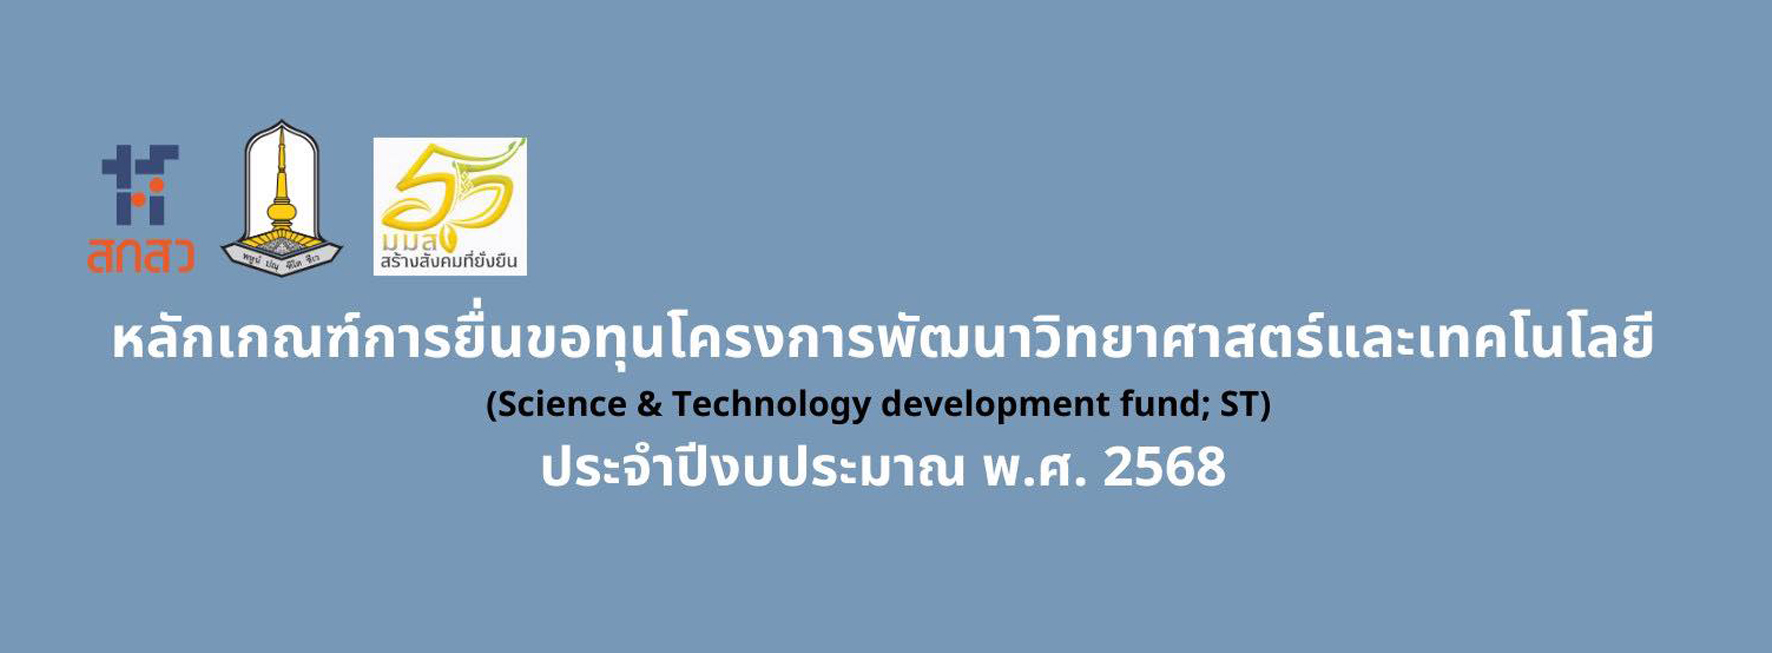 ประชาสัมพันธ์ประกาศหลักเกณฑ์การเสนอขอรับทุนอุดหนุน (Science & Technology development fund; ST)